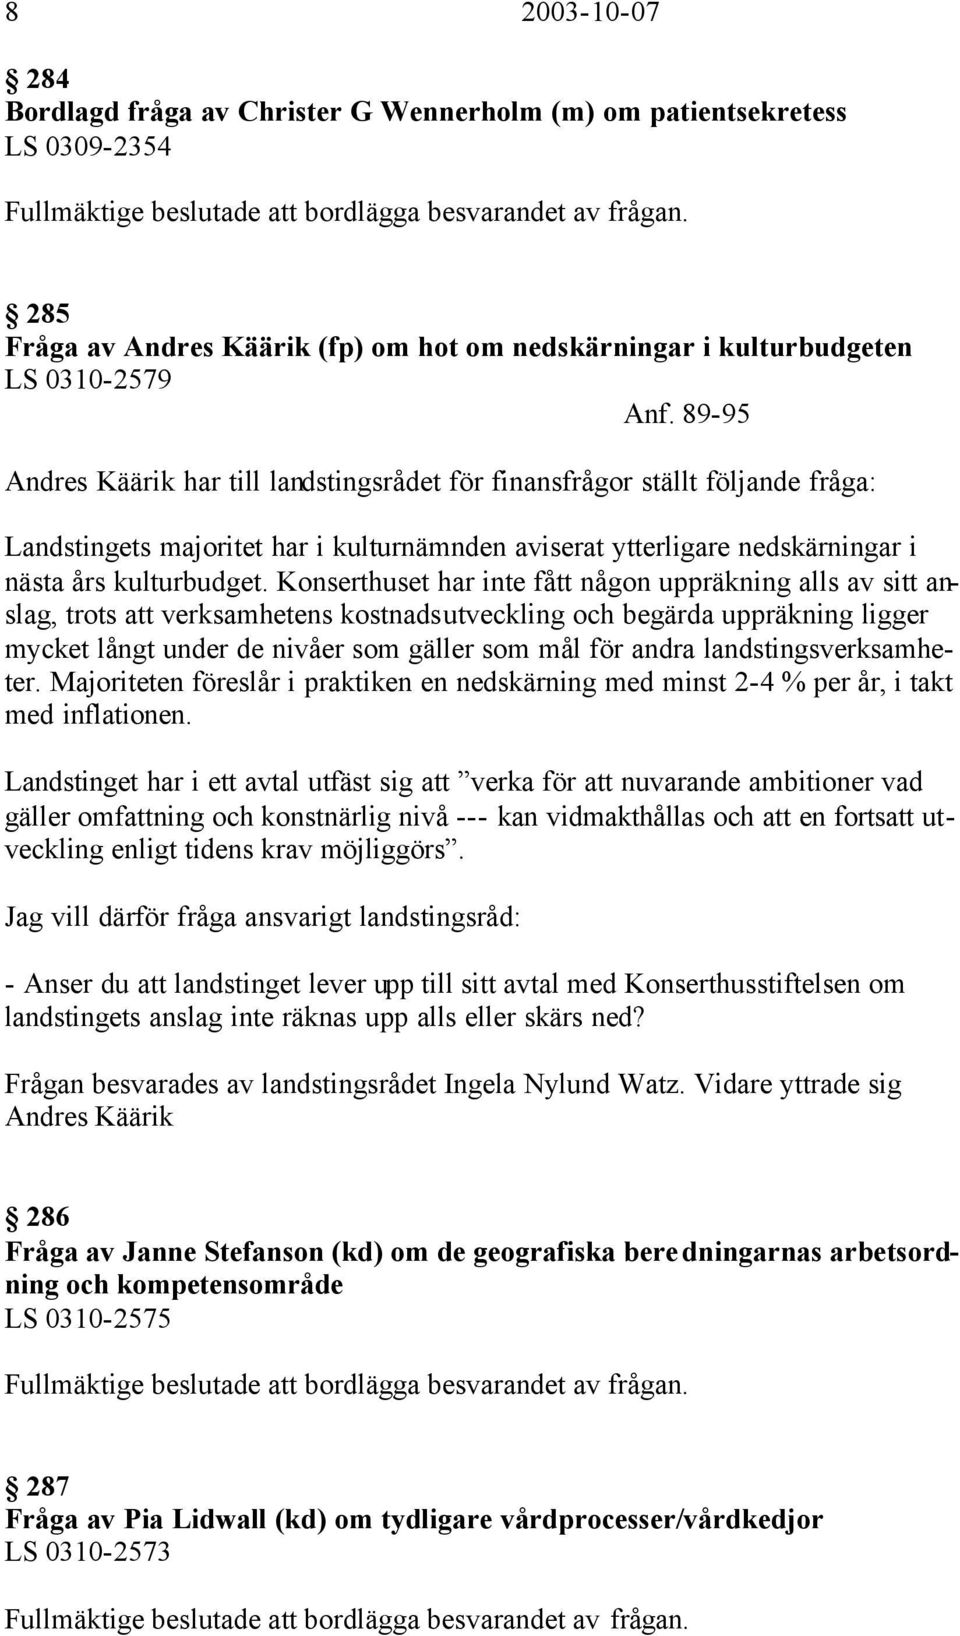 89-95 Andres Käärik har till landstingsrådet för finansfrågor ställt följande fråga: Landstingets majoritet har i kulturnämnden aviserat ytterligare nedskärningar i nästa års kulturbudget.